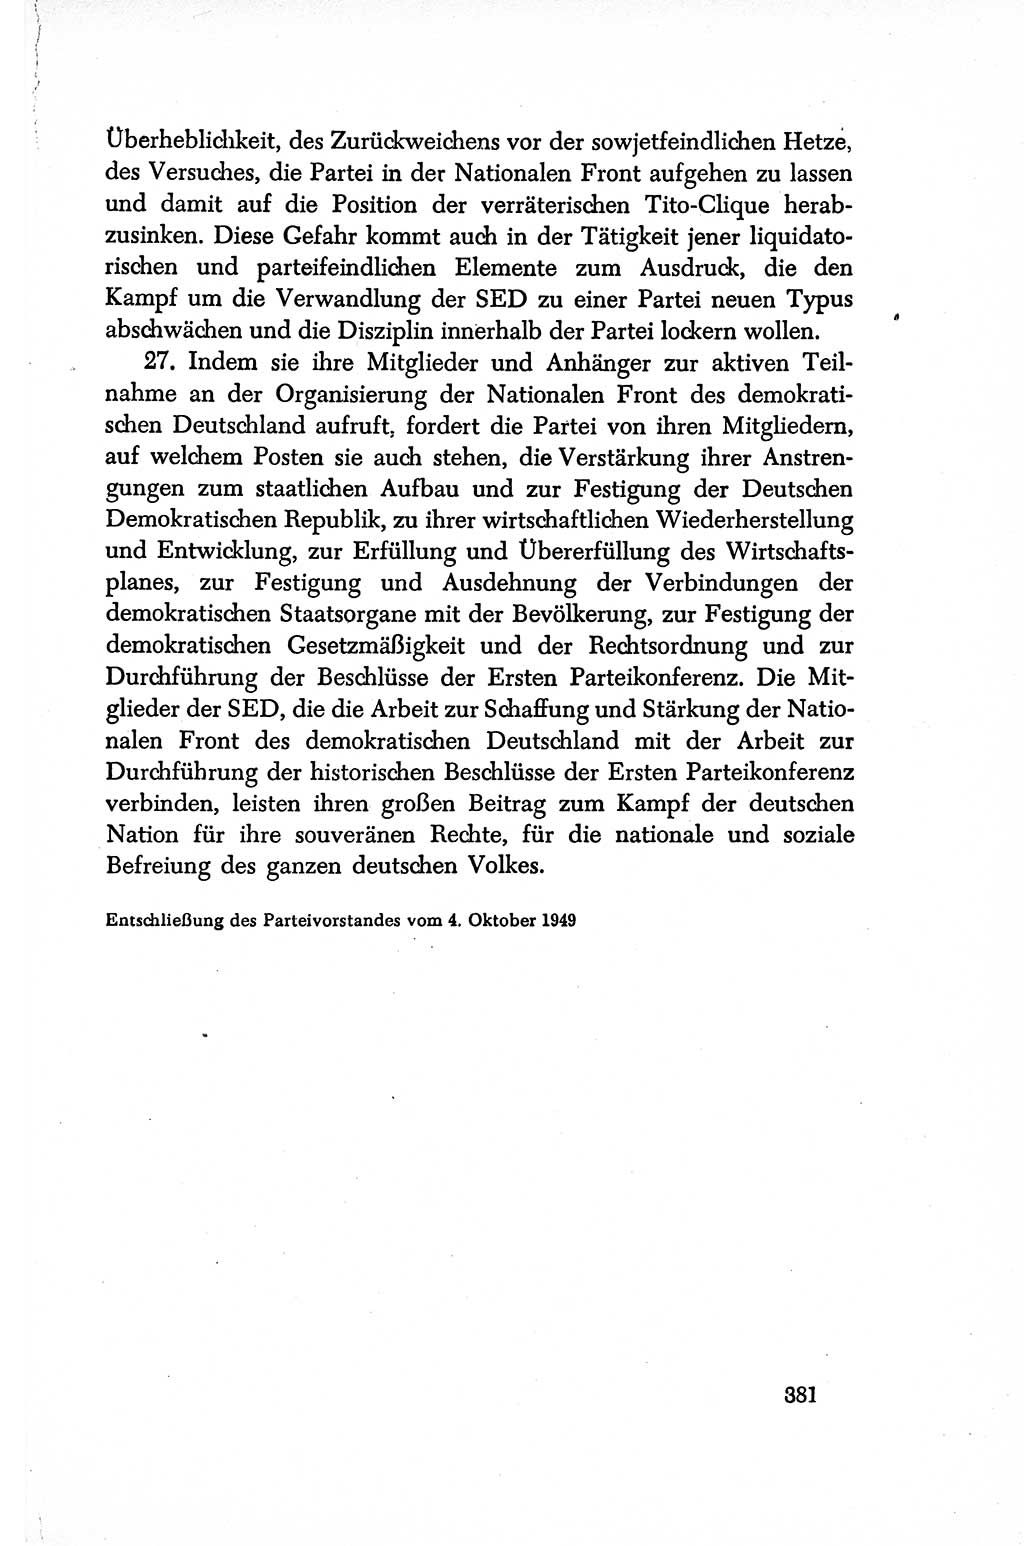 Dokumente der Sozialistischen Einheitspartei Deutschlands (SED) [Sowjetische Besatzungszone (SBZ) Deutschlands/Deutsche Demokratische Republik (DDR)] 1948-1950, Seite 381 (Dok. SED SBZ Dtl. DDR 1948-1950, S. 381)